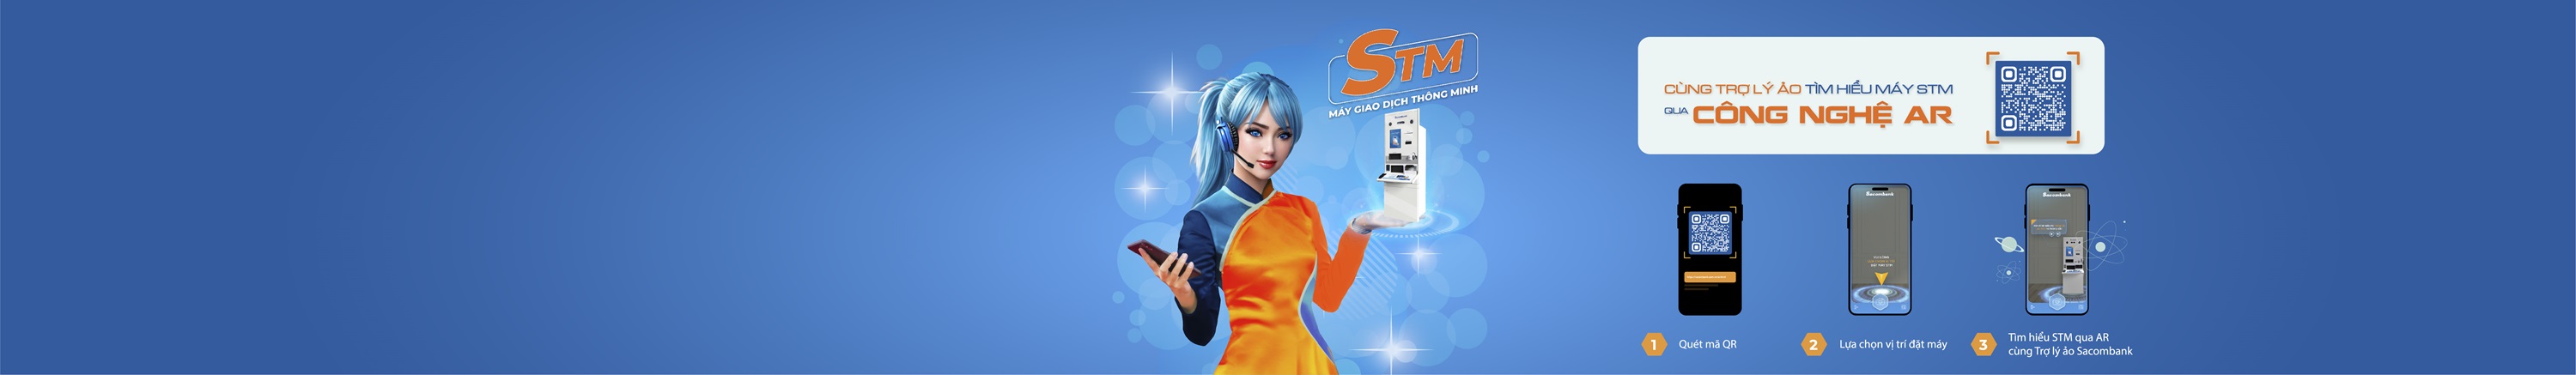 STM – Máy giao dịch thông minh